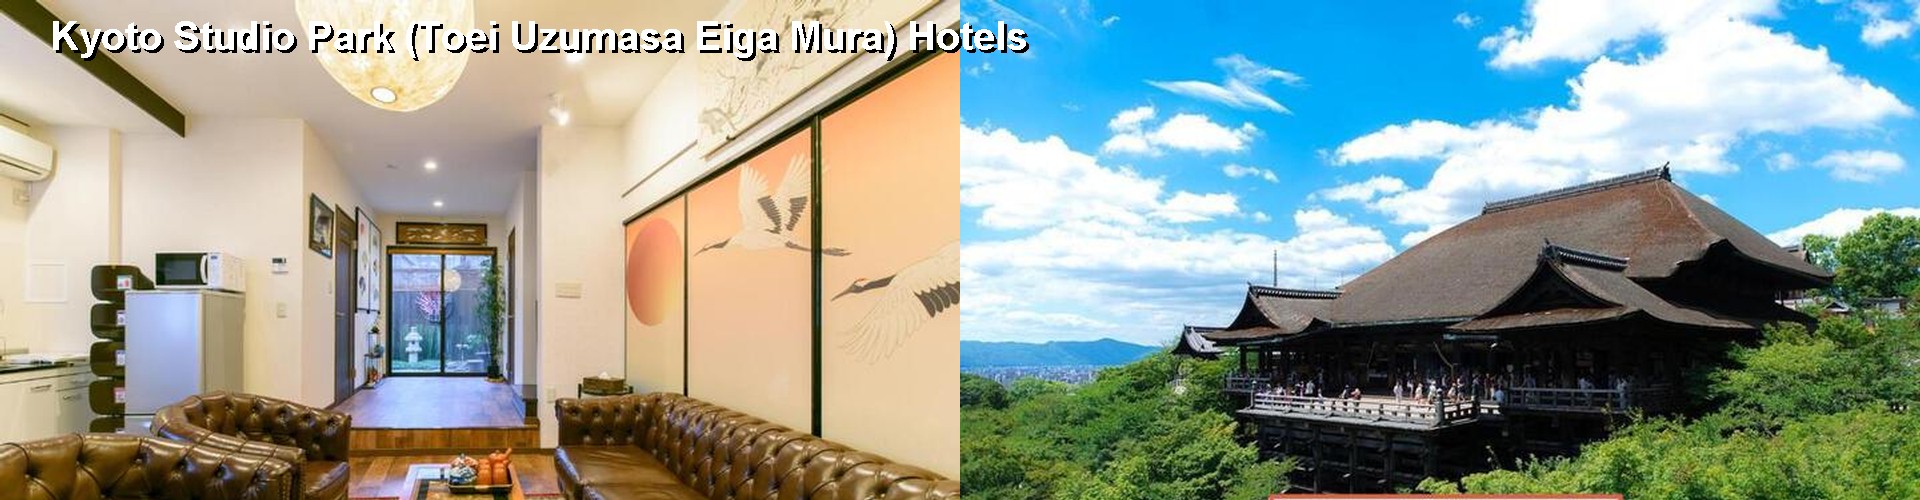 5 Best Hotels near Kyoto Studio Park (Toei Uzumasa Eiga Mura)